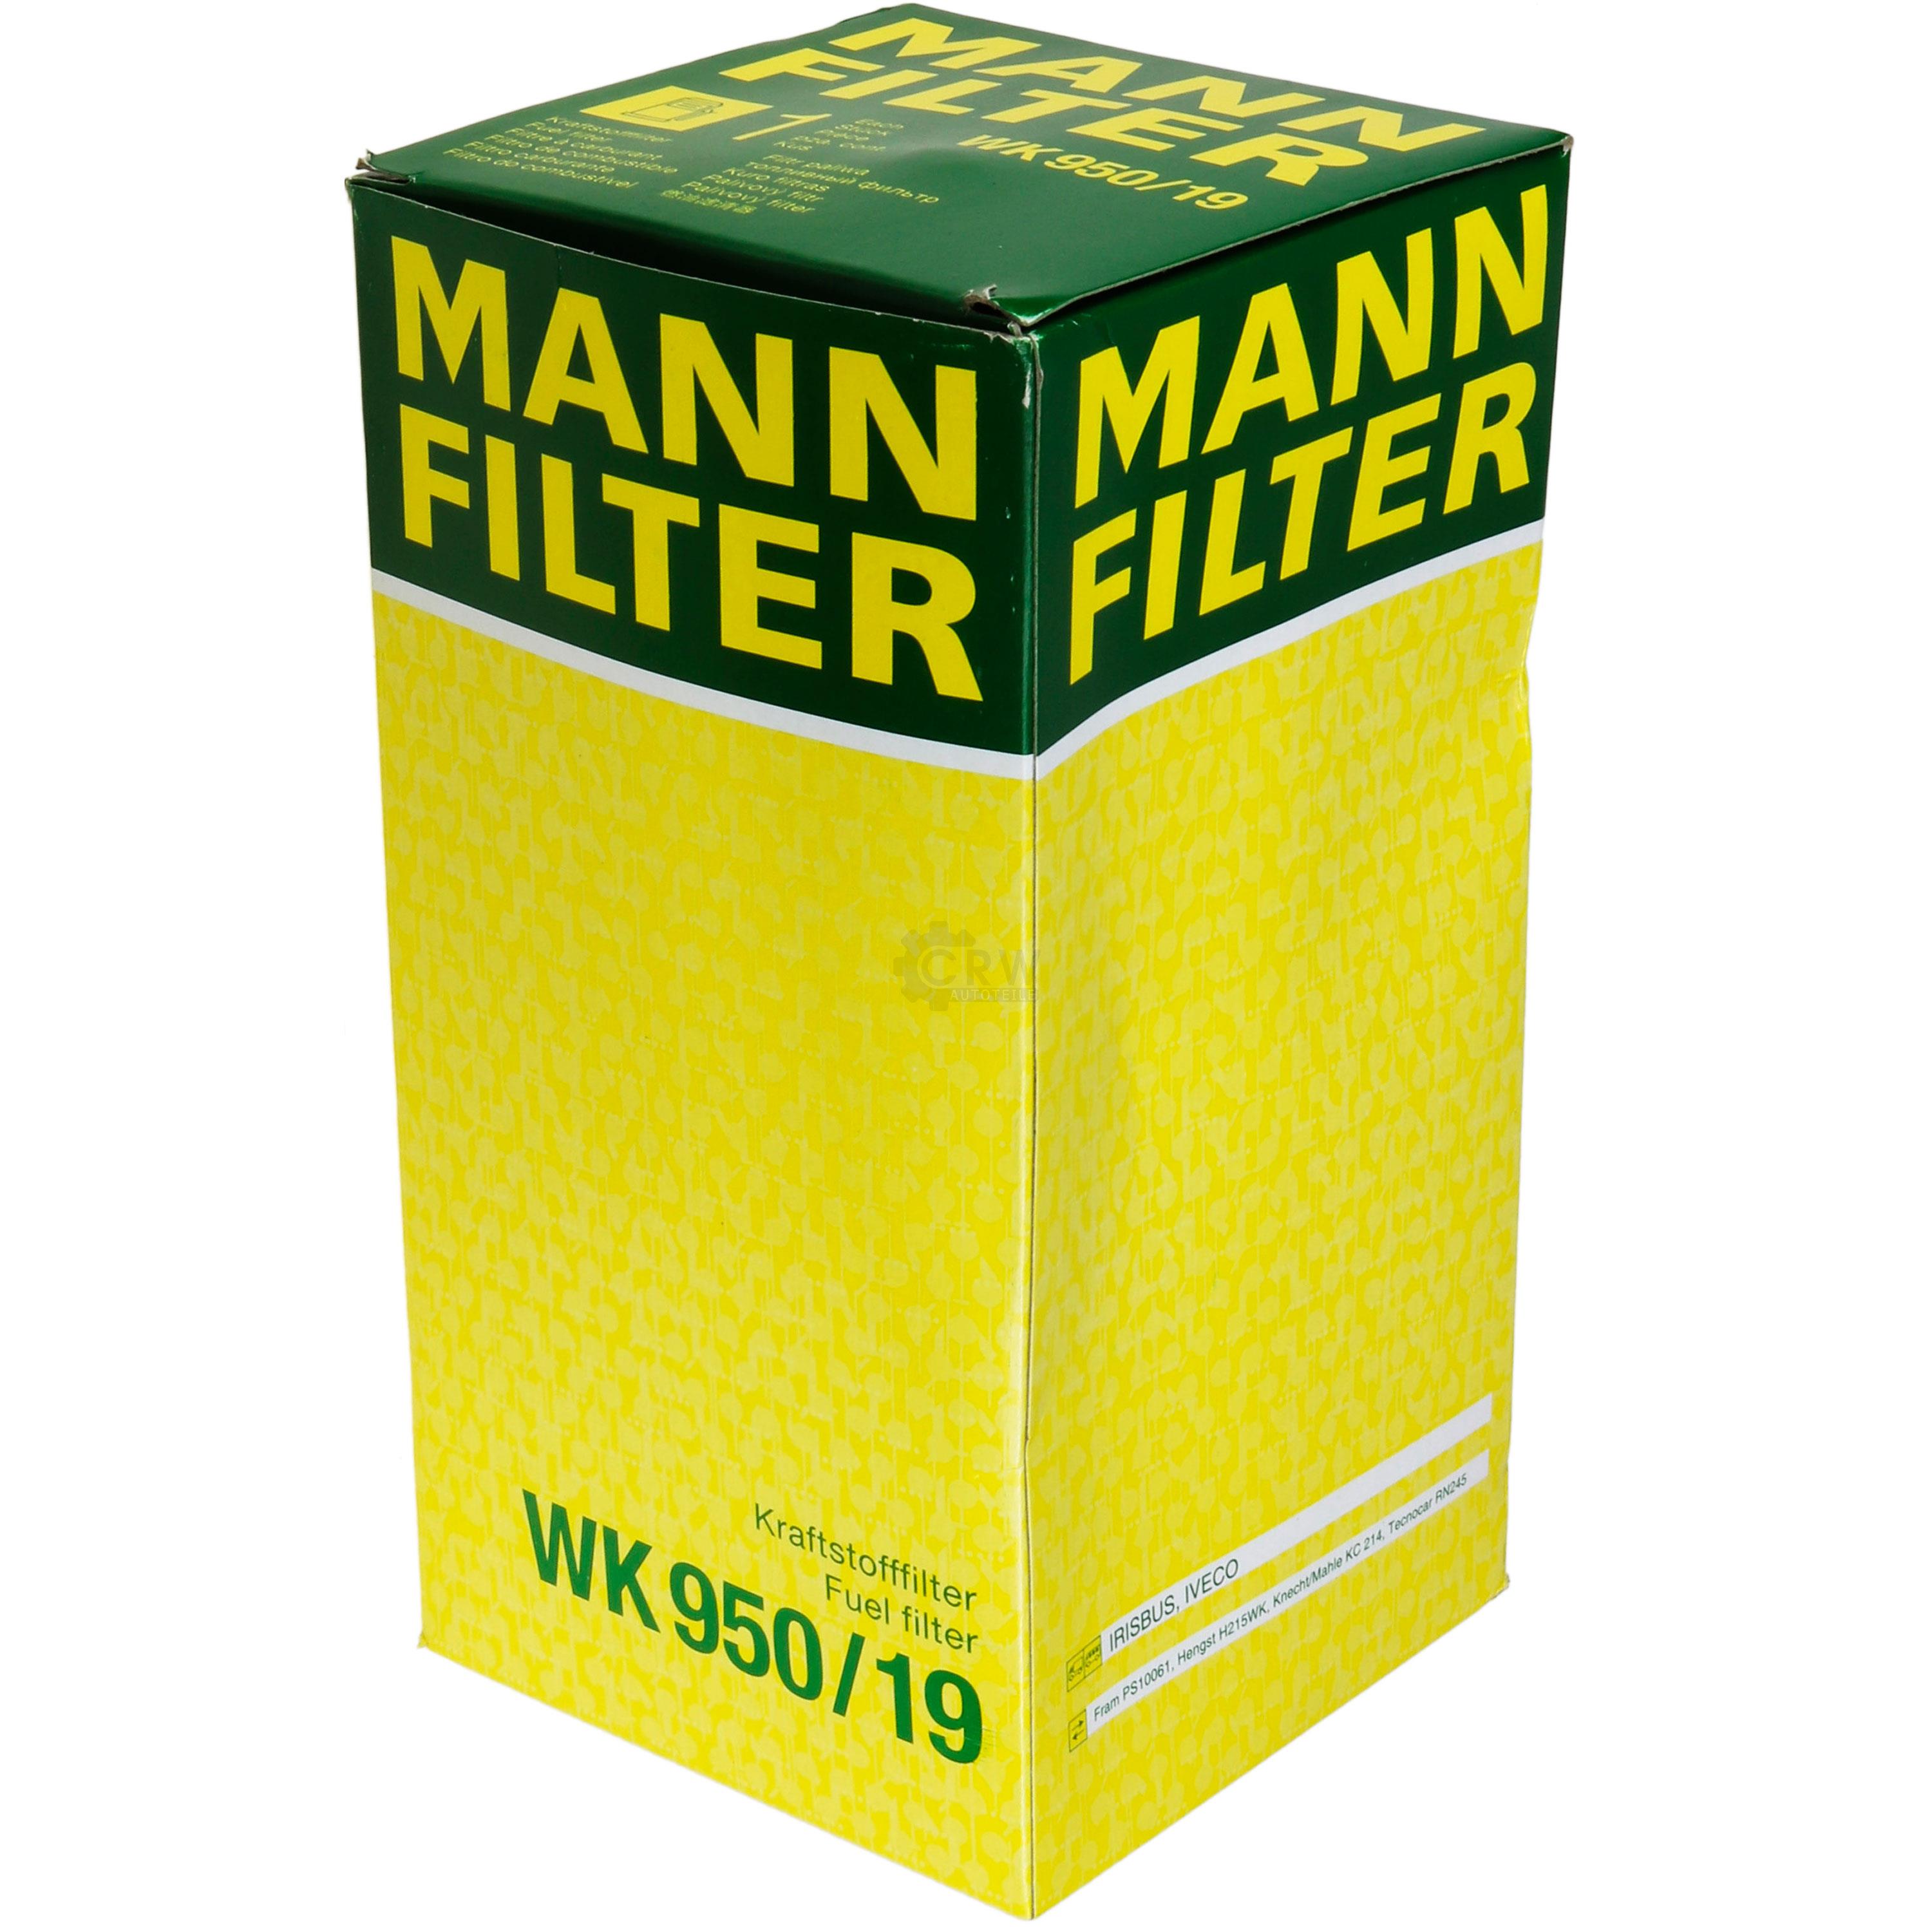 MANN-FILTER Kraftstofffilter WK 950/19 Fuel Filter